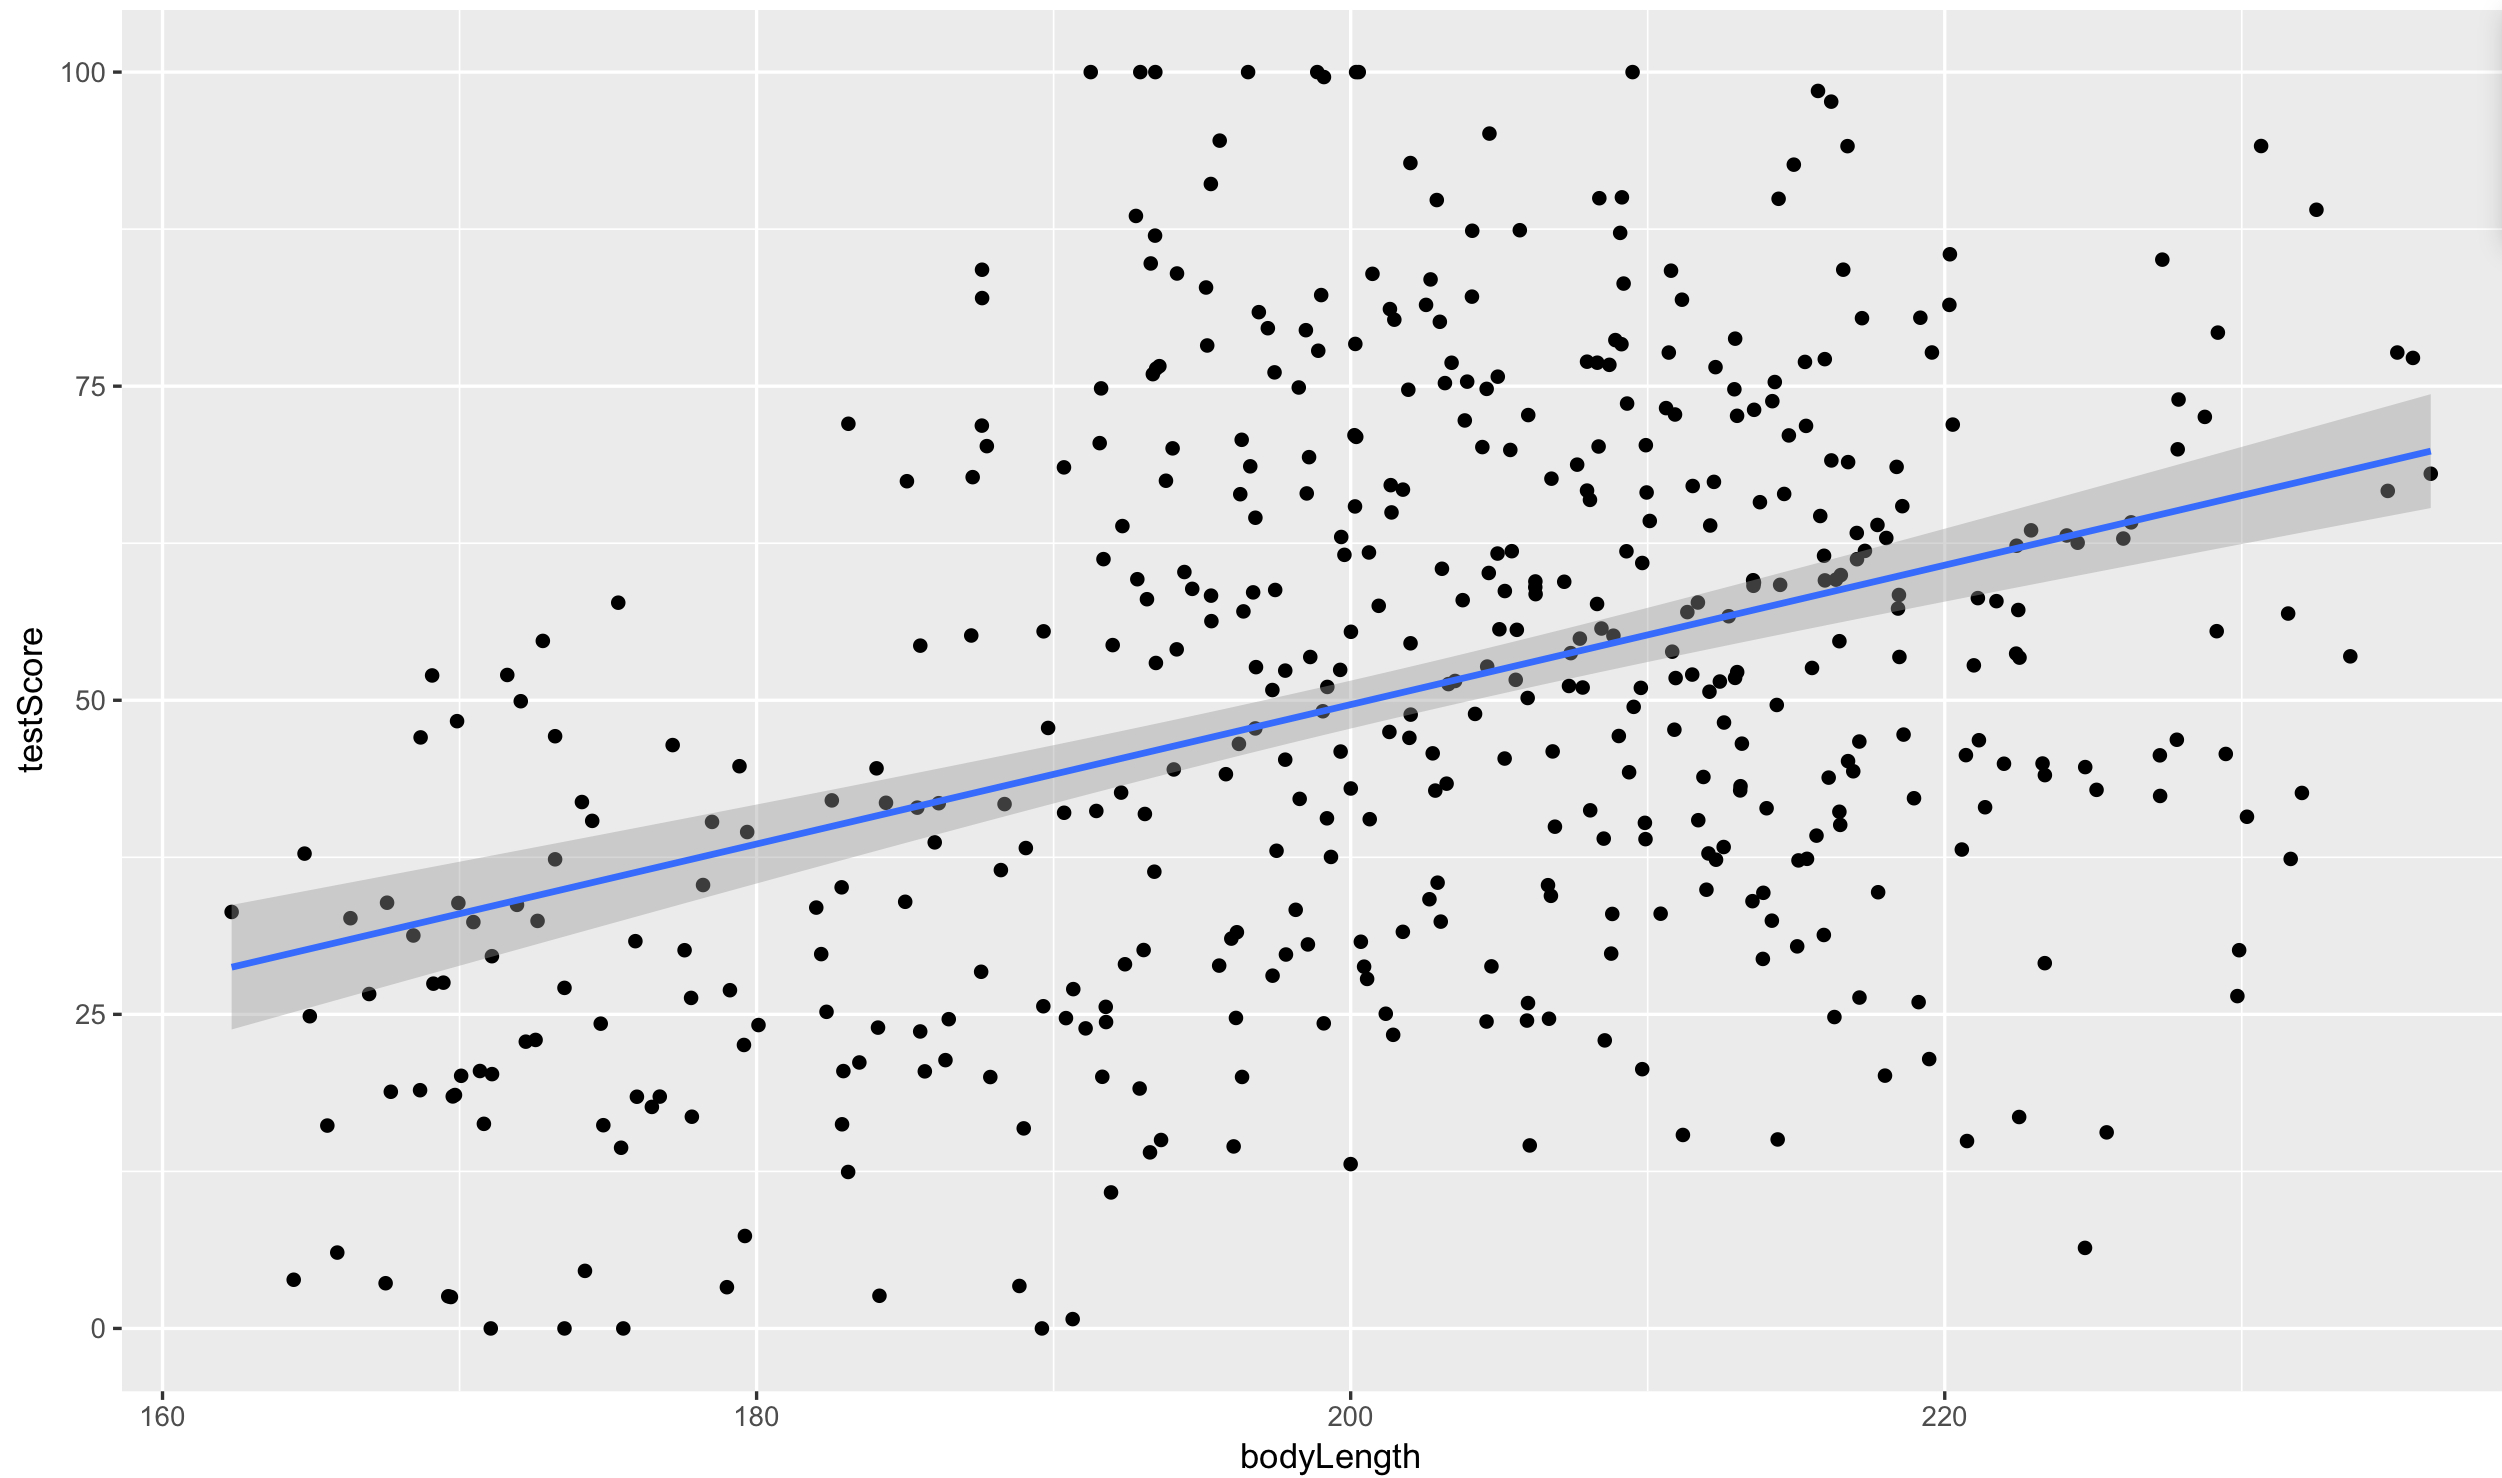 Scatter plot of bodyLength vs. testScore